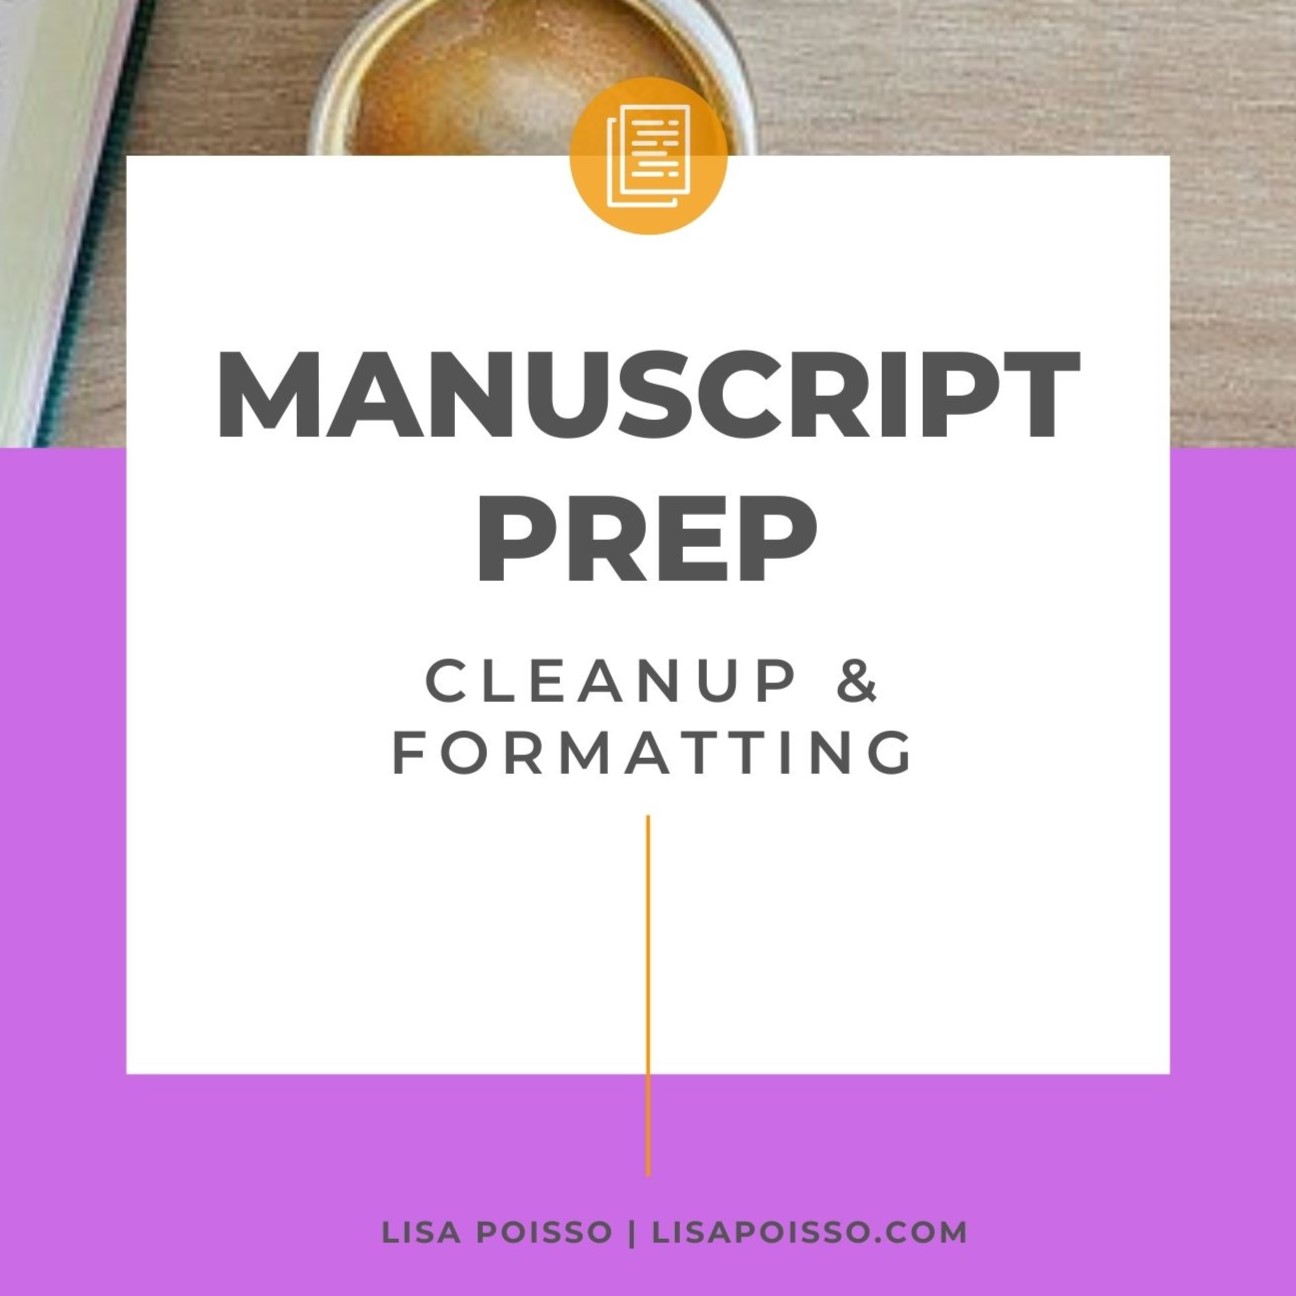 Manuscript Prep Guide